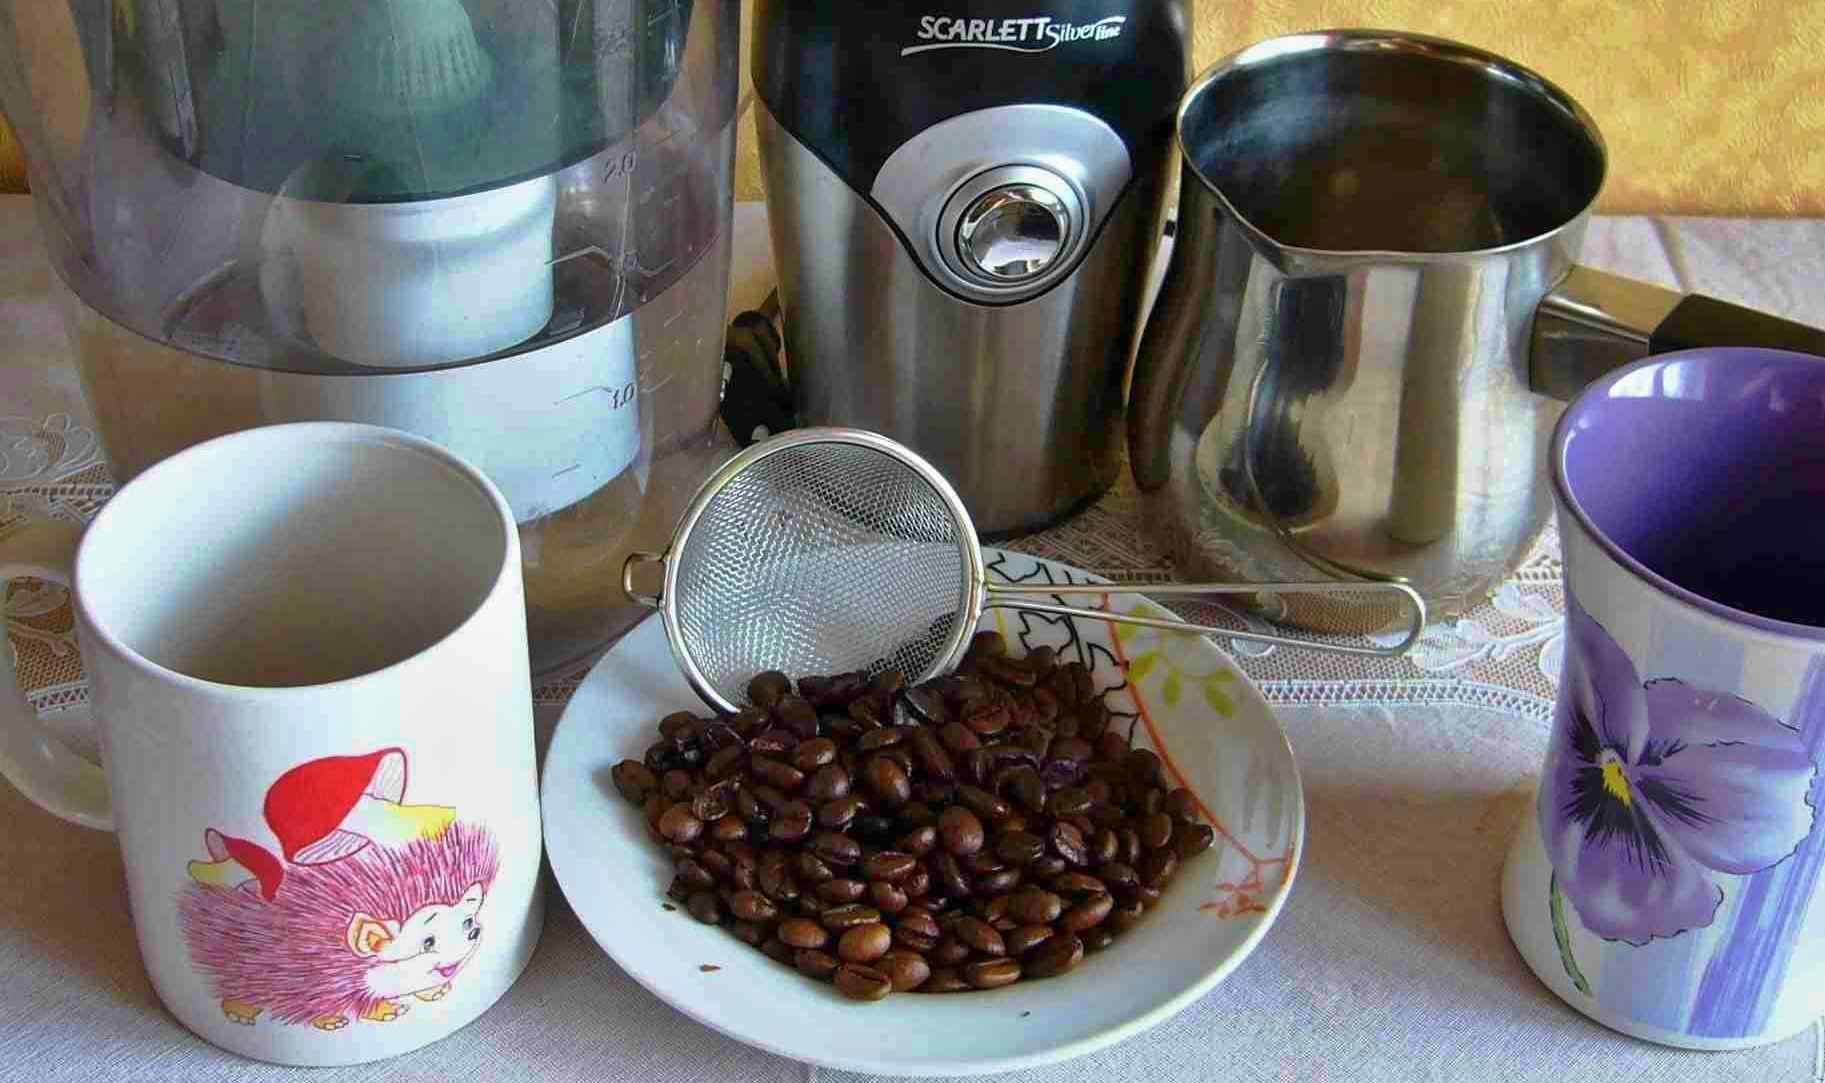 Как готовить кофе без турки и кофемашины